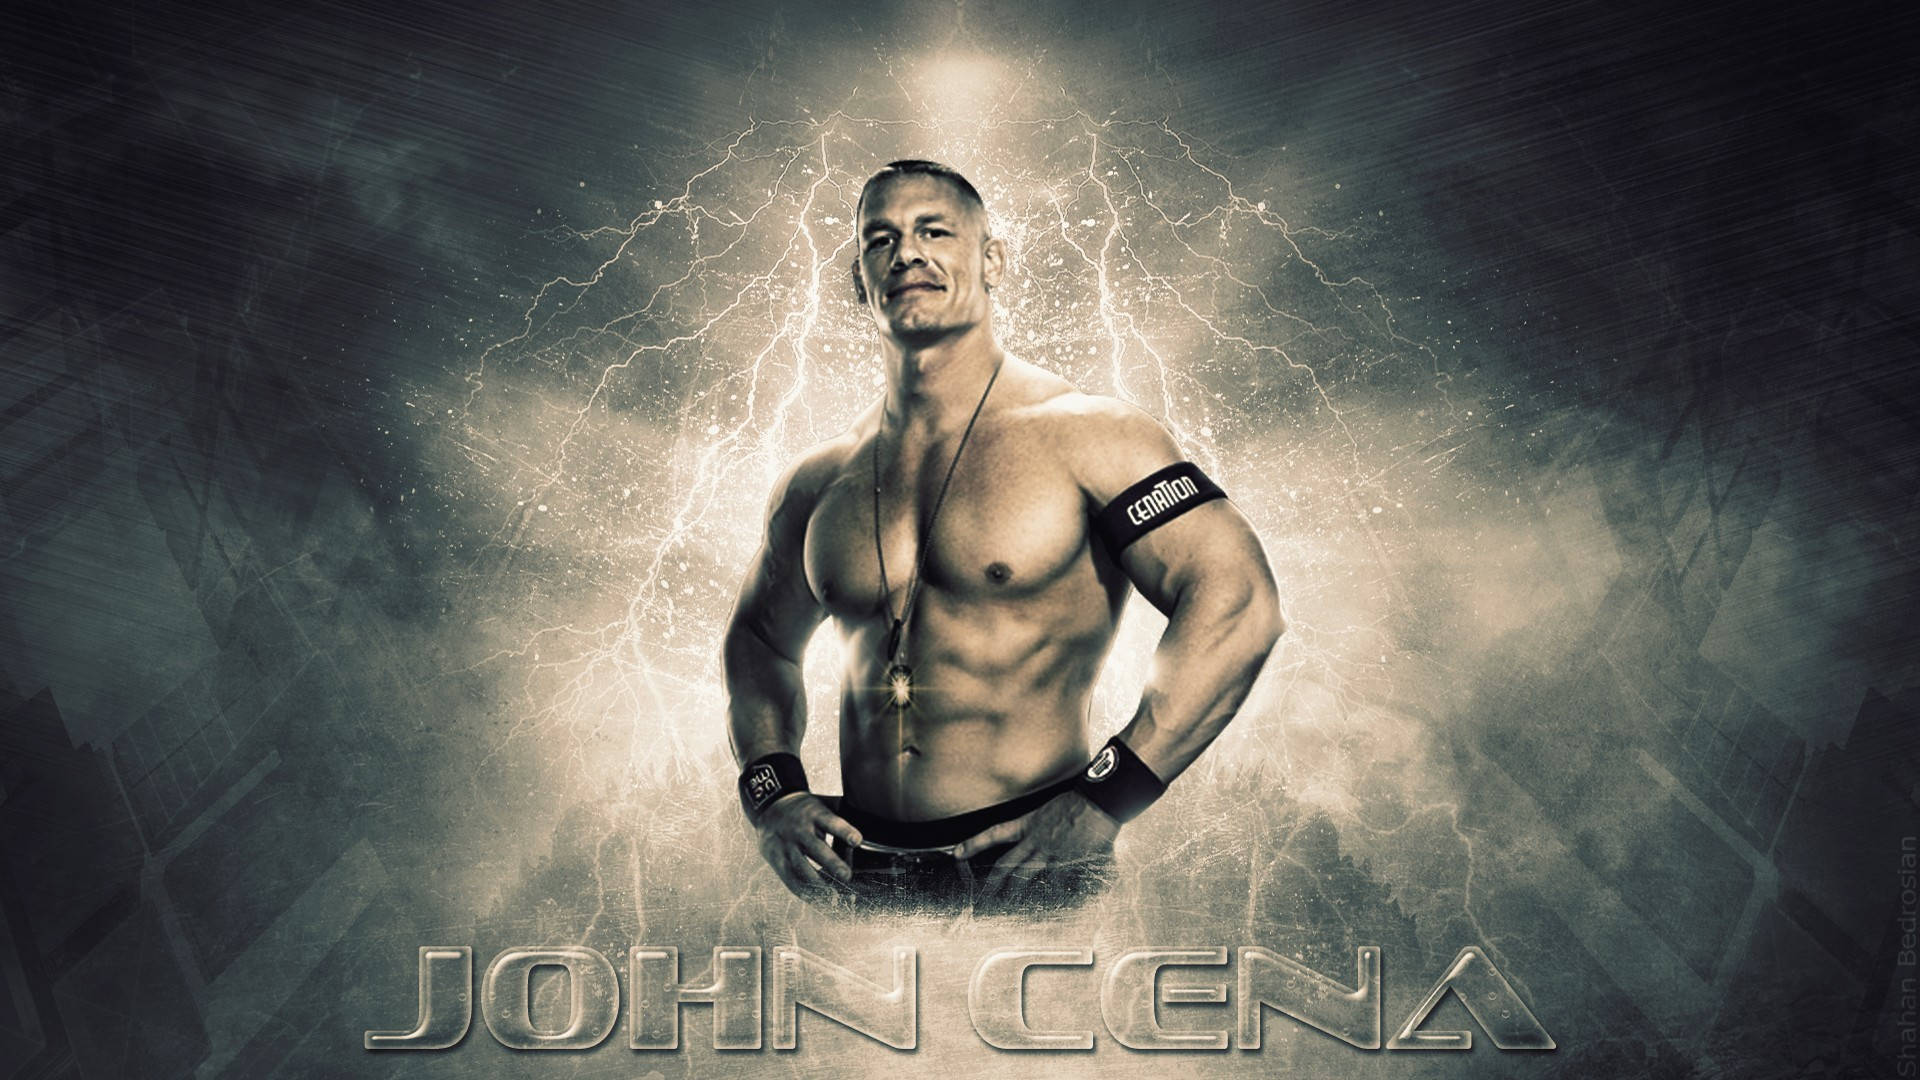 Wwe Superstar John Cena Aesthetic Cover